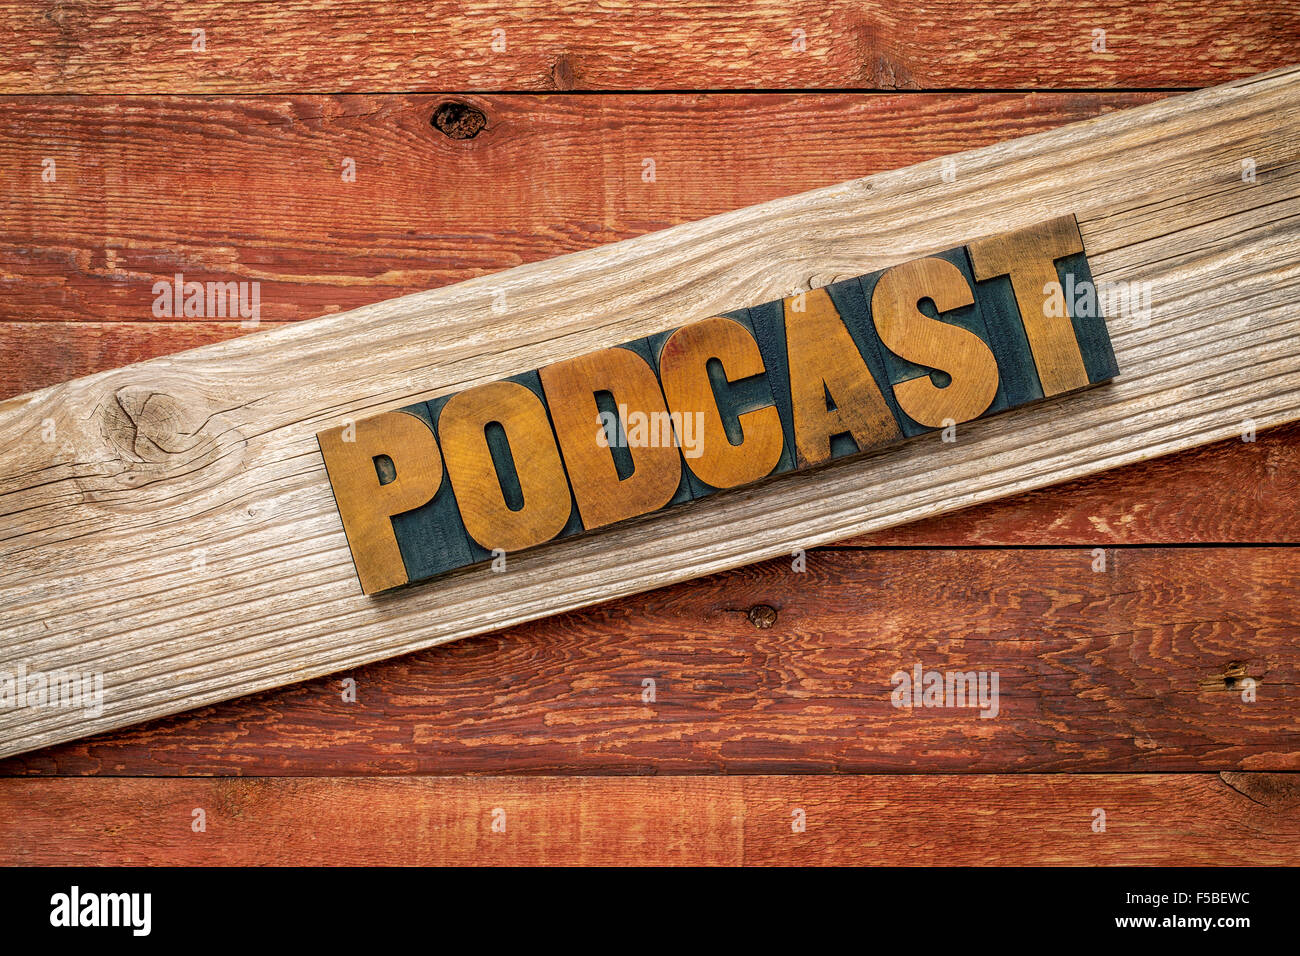 rustikale Zeichen Podcast - Buchdruck Holzart über gemaserte Zedernholz Plank gegen rote Scheune Holz Stockfoto